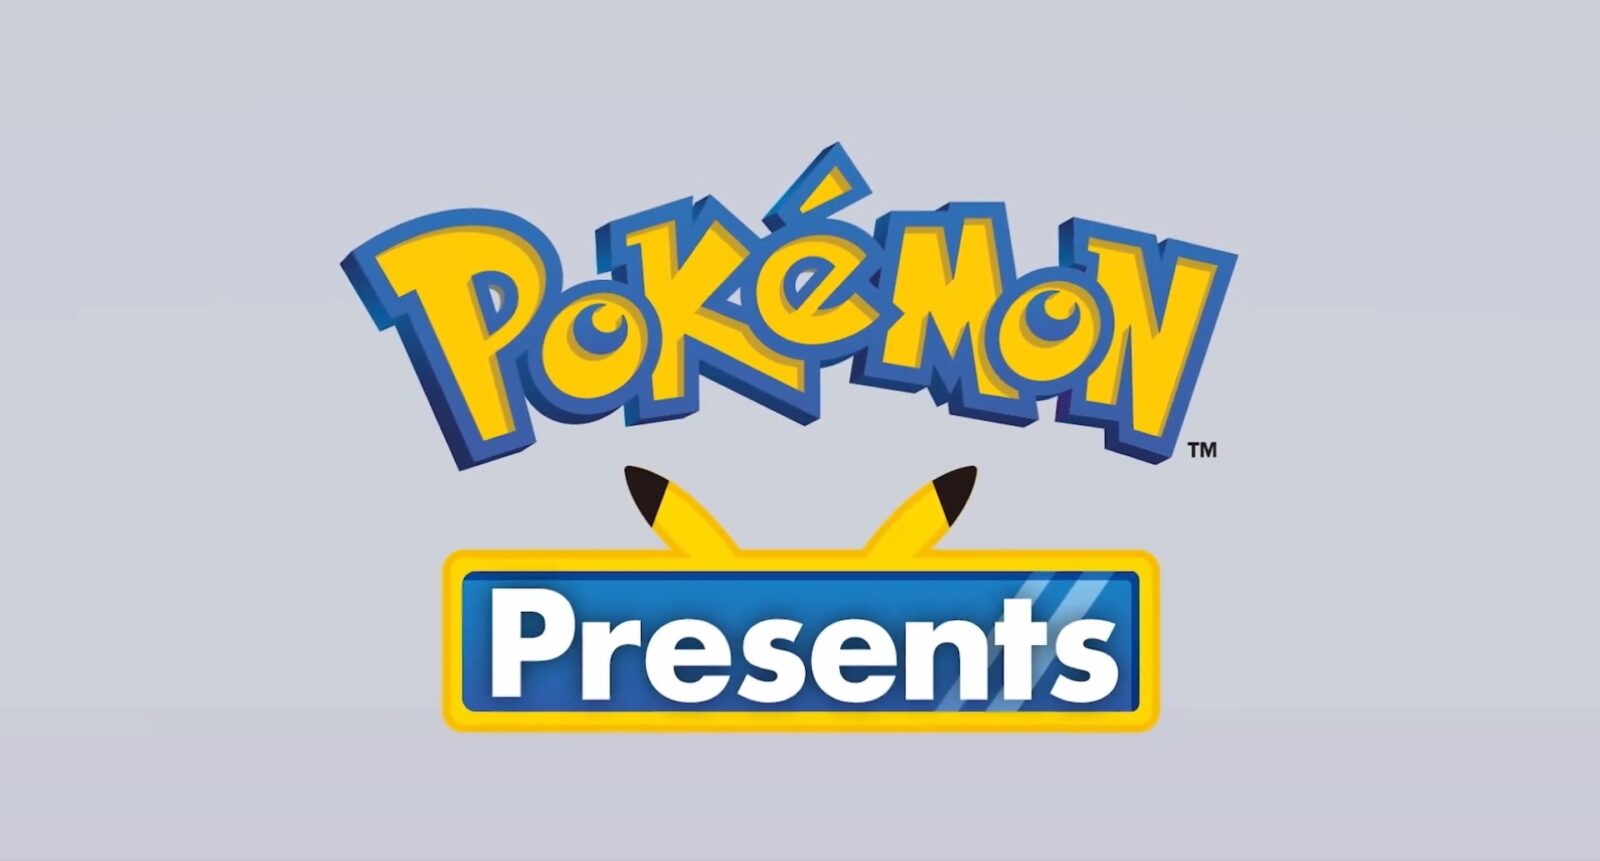 Pokémon Company revela data do Pokémon Presents em fevereiro